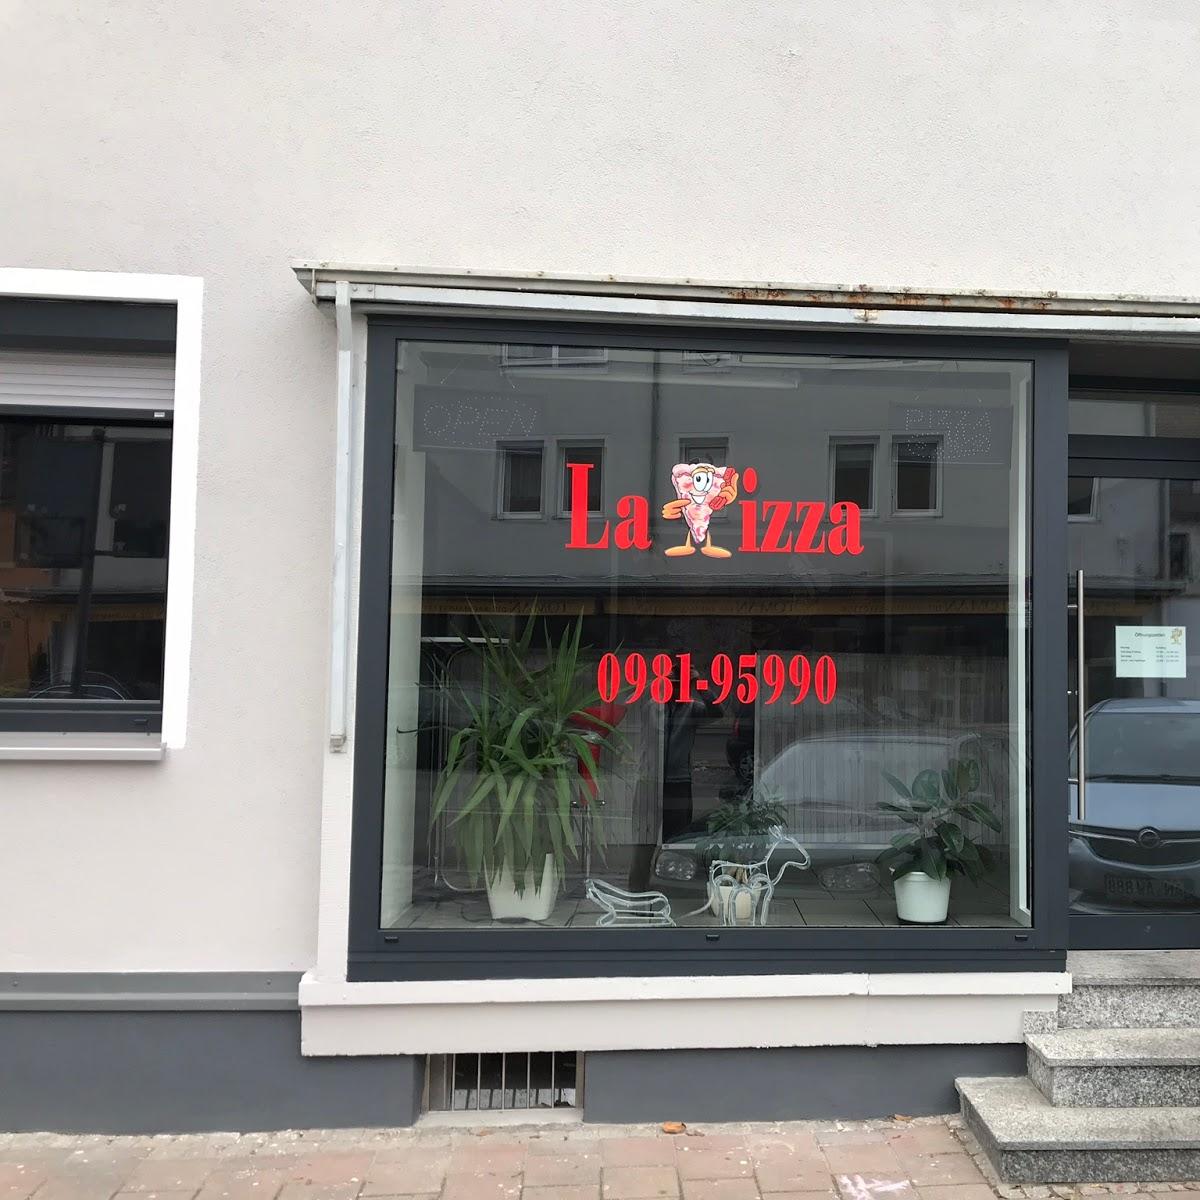 Restaurant "La Pizza Pizzaservice" in Ansbach